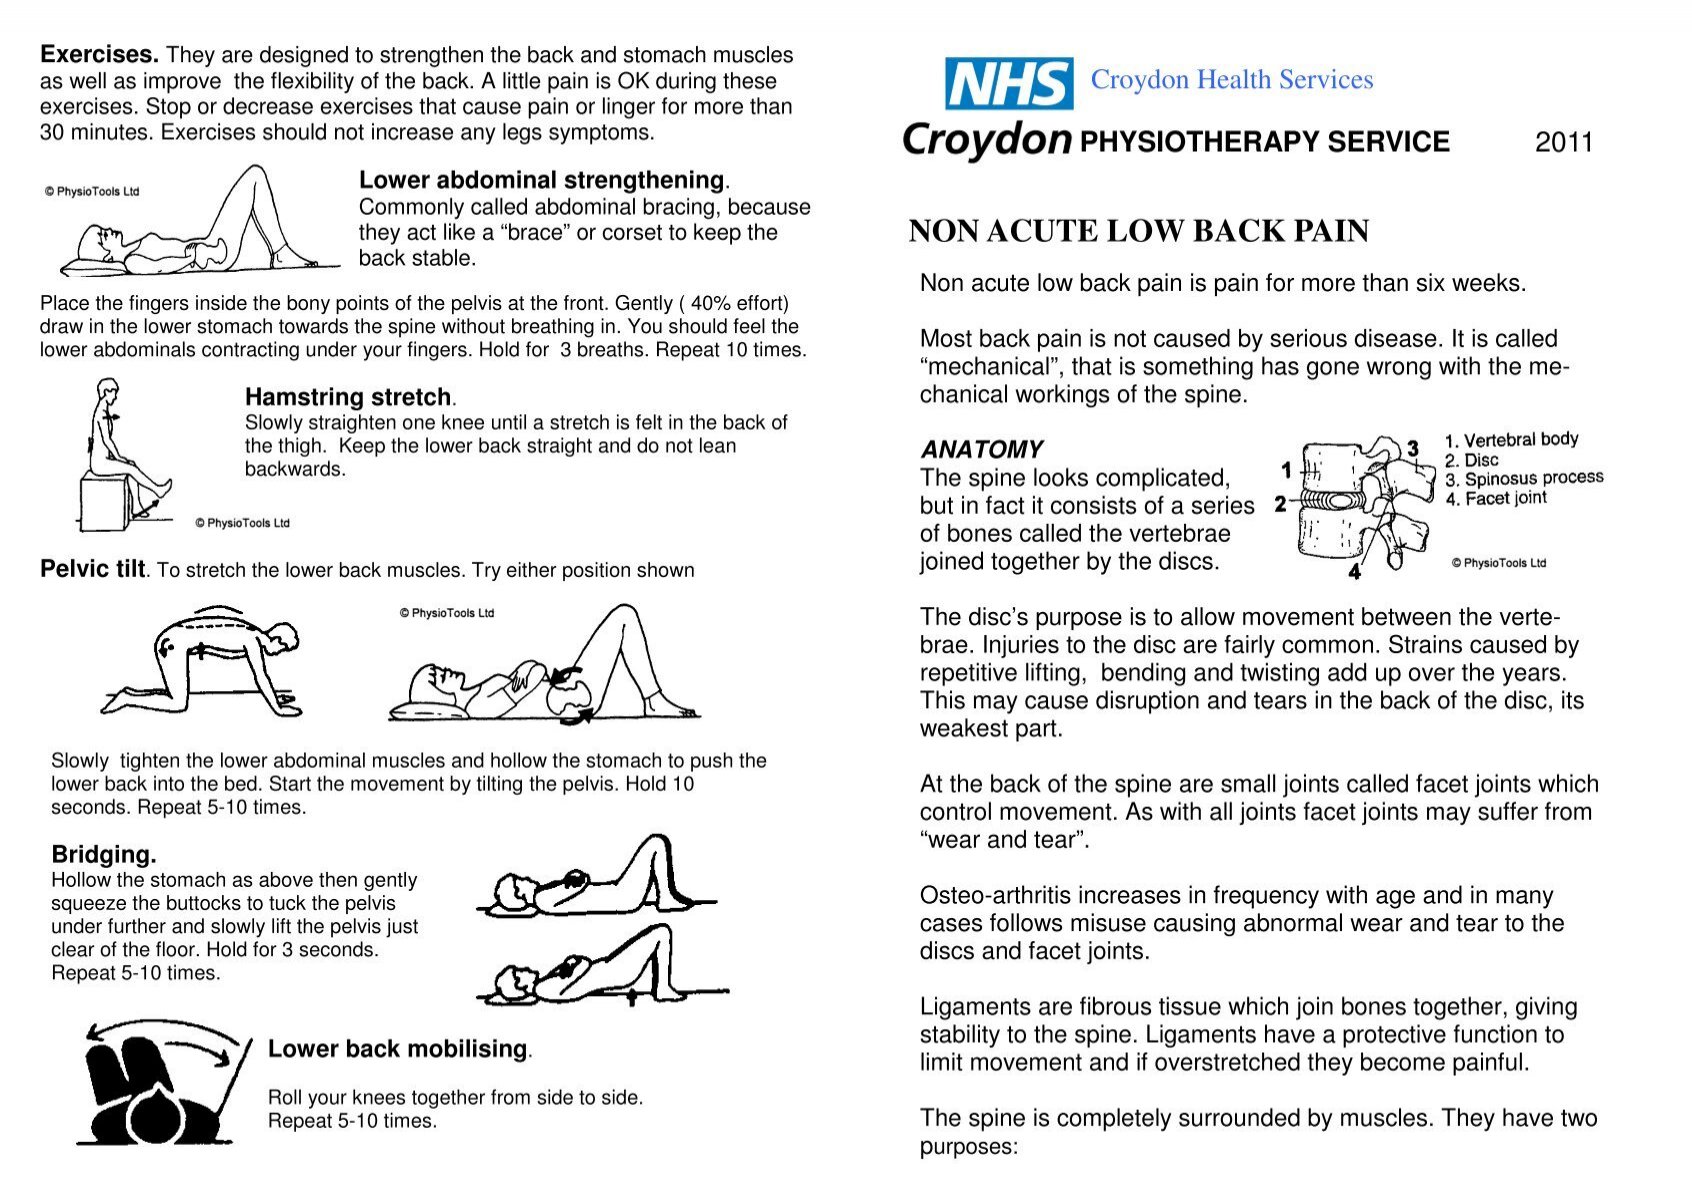 Non-acute low back pain - Croydon Health Services NHS Trust